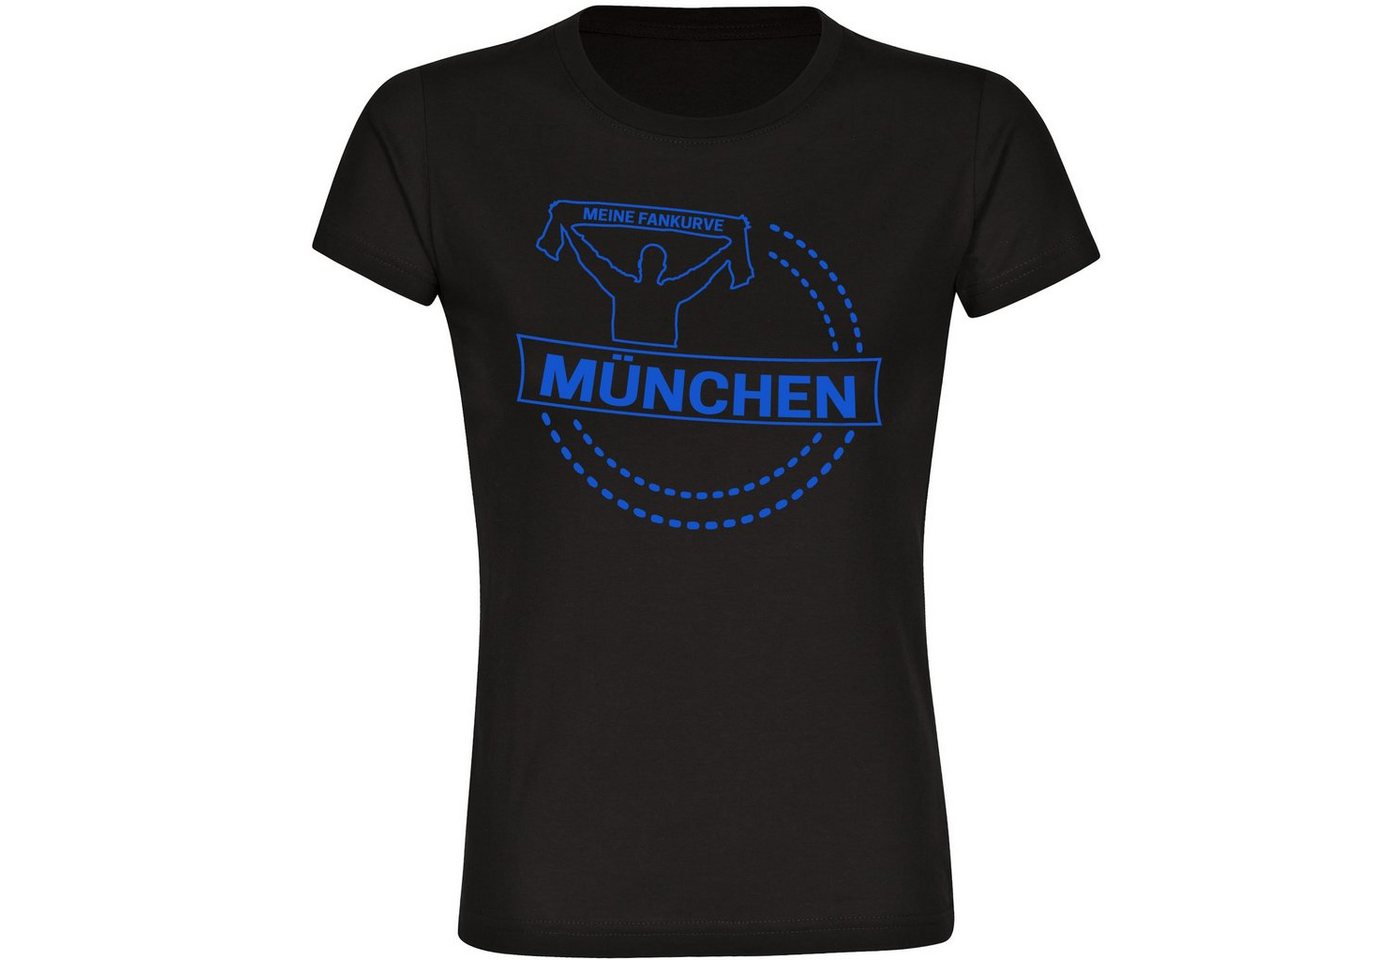 multifanshop T-Shirt Damen München blau - Meine Fankurve - Frauen von multifanshop